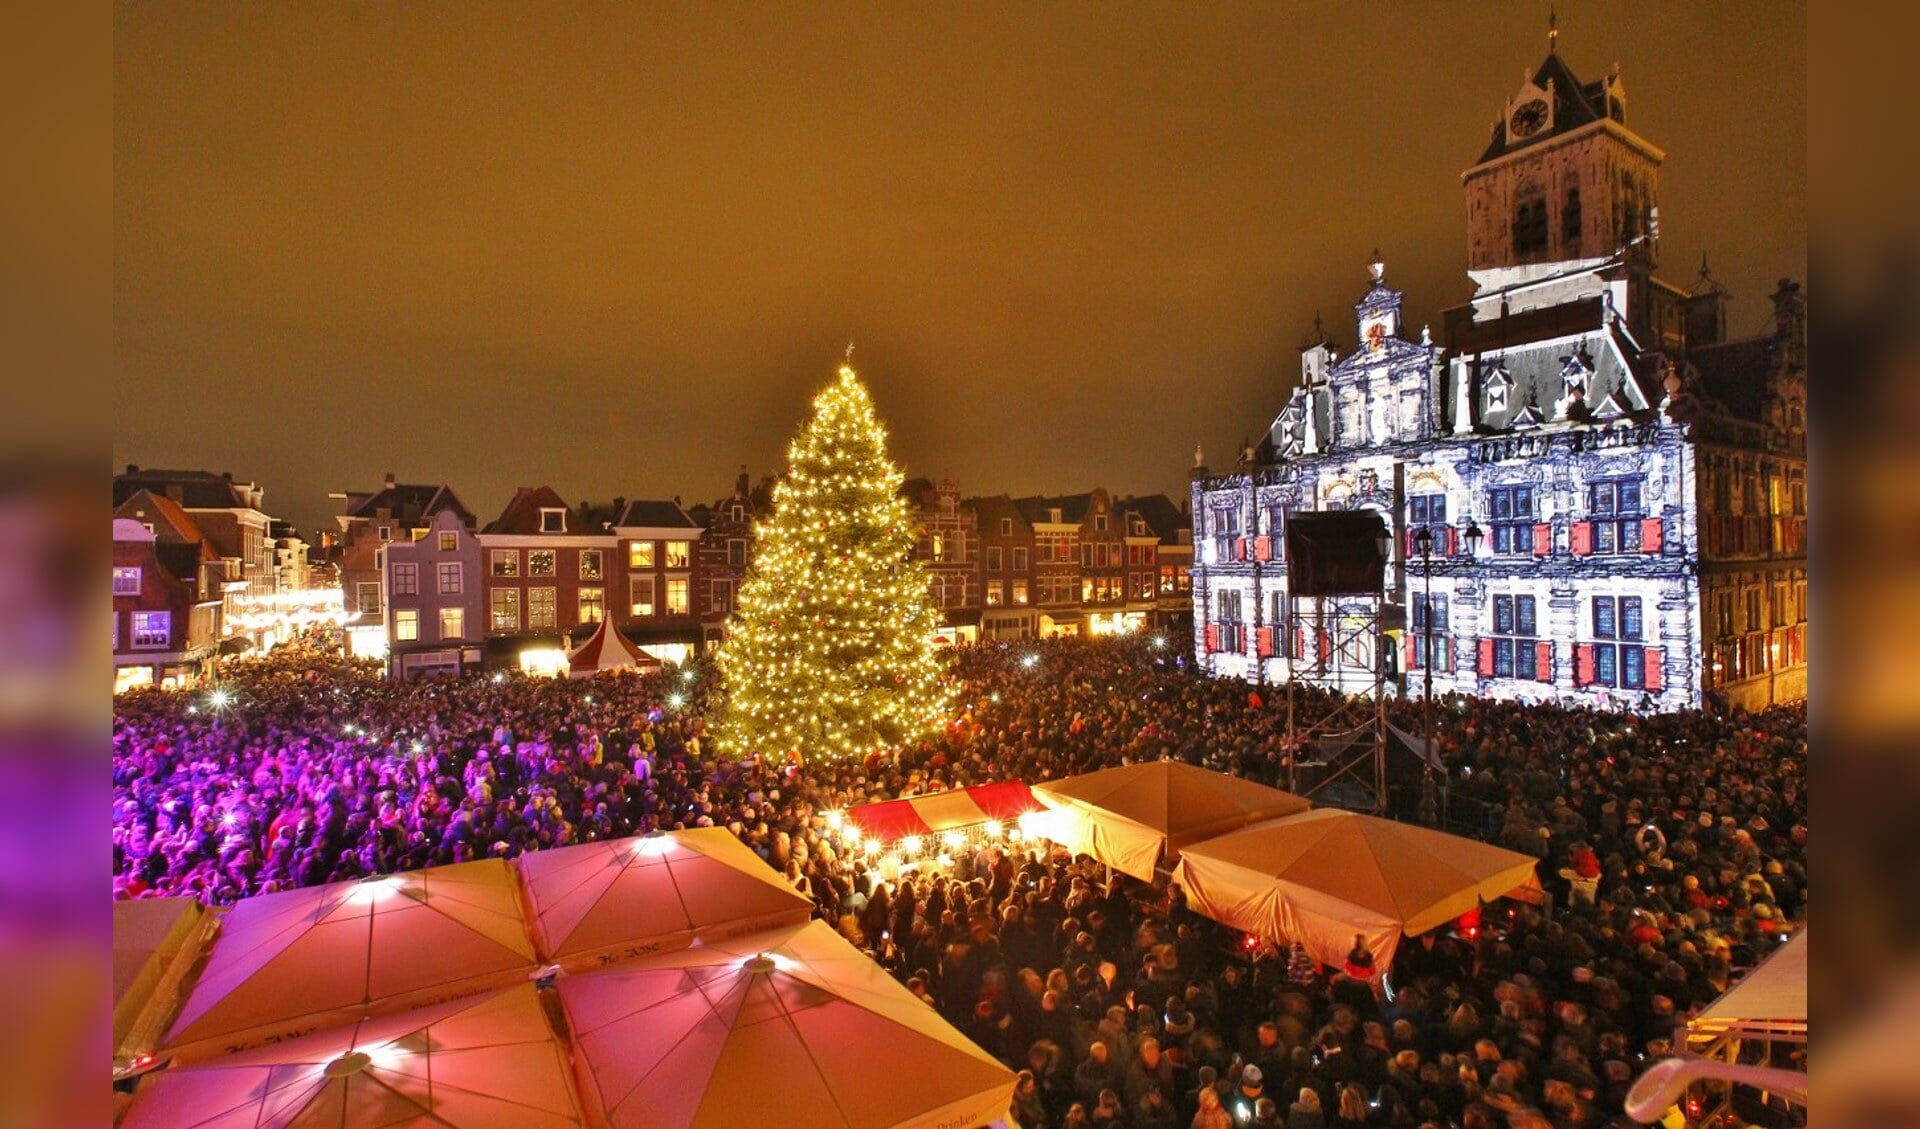 De kerstboom op de Markt stak tijdens de vorige editie van Lichtjesavond boven de massa uit. Dat zal ook dinsdag 8 december weer zo zijn. 